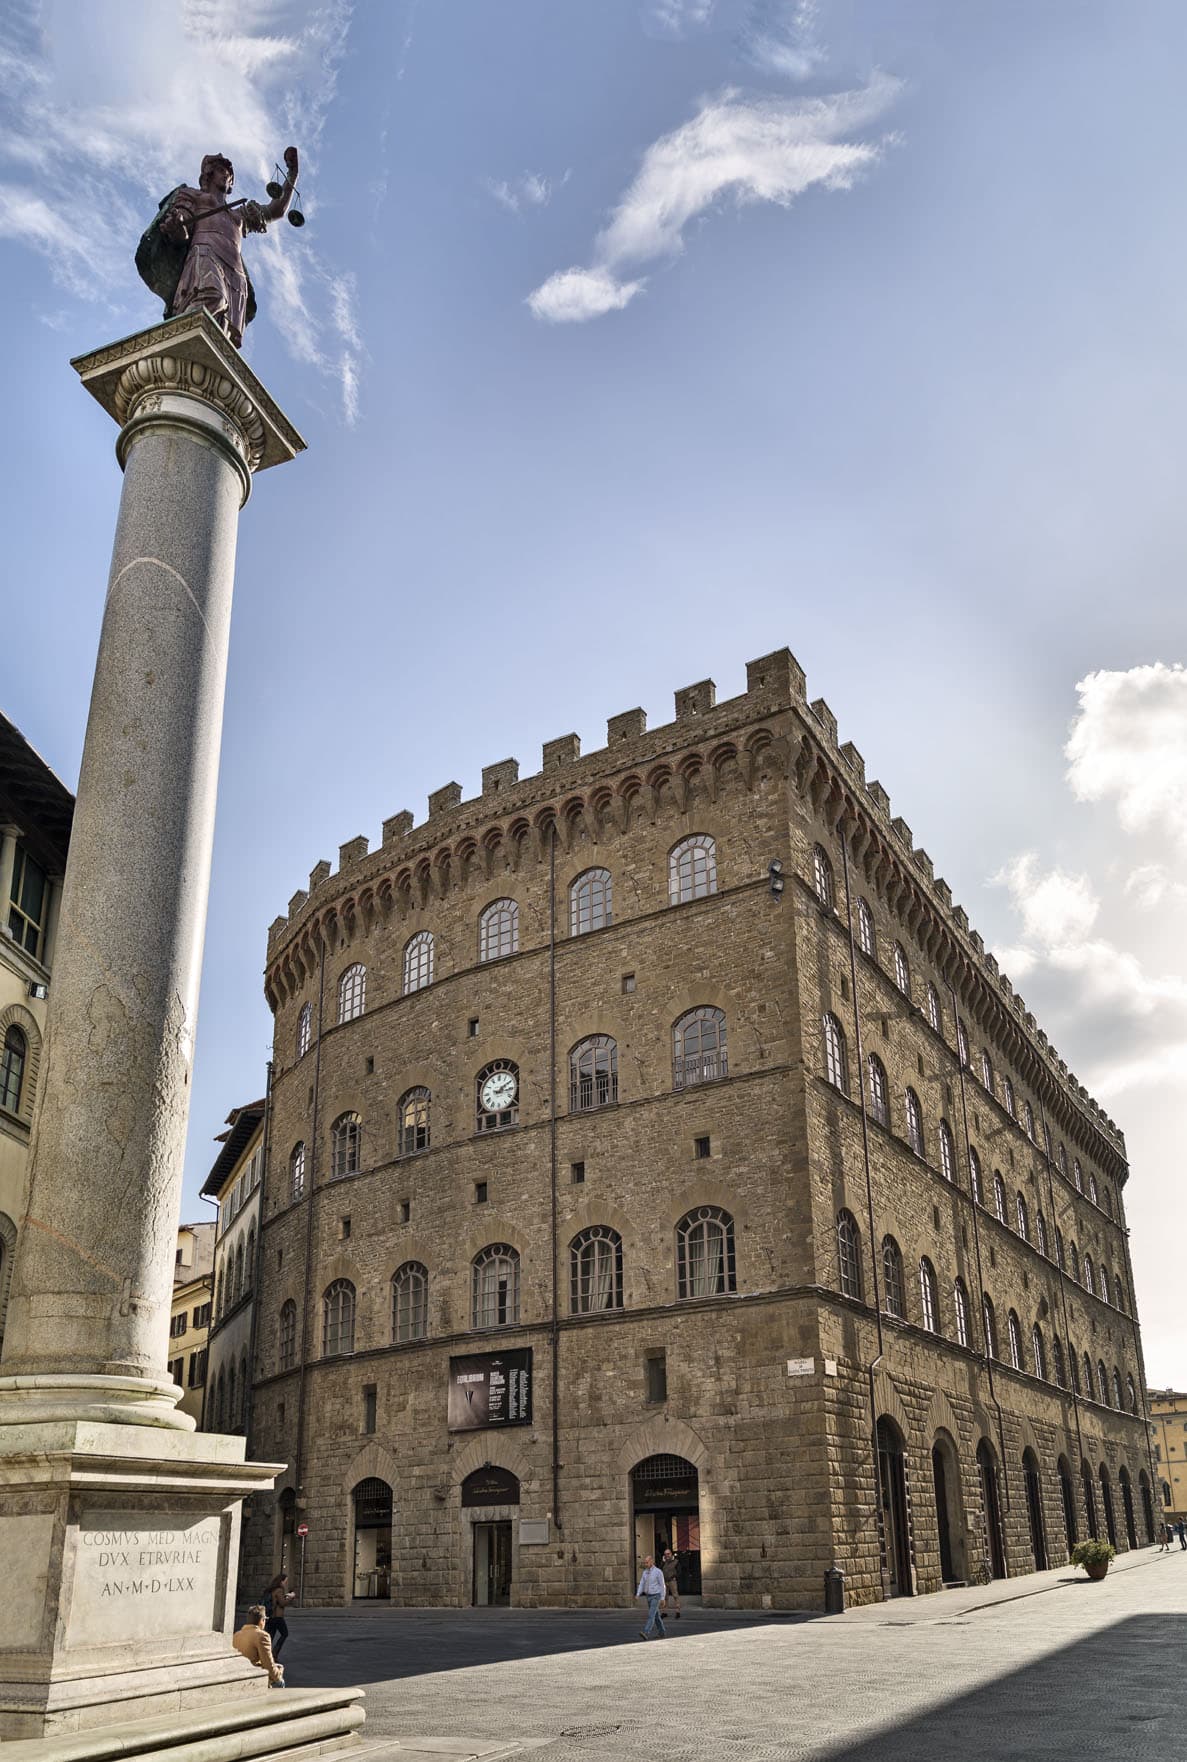 Salvatore Ferragamo Palazzo Spini Feroni in Florence